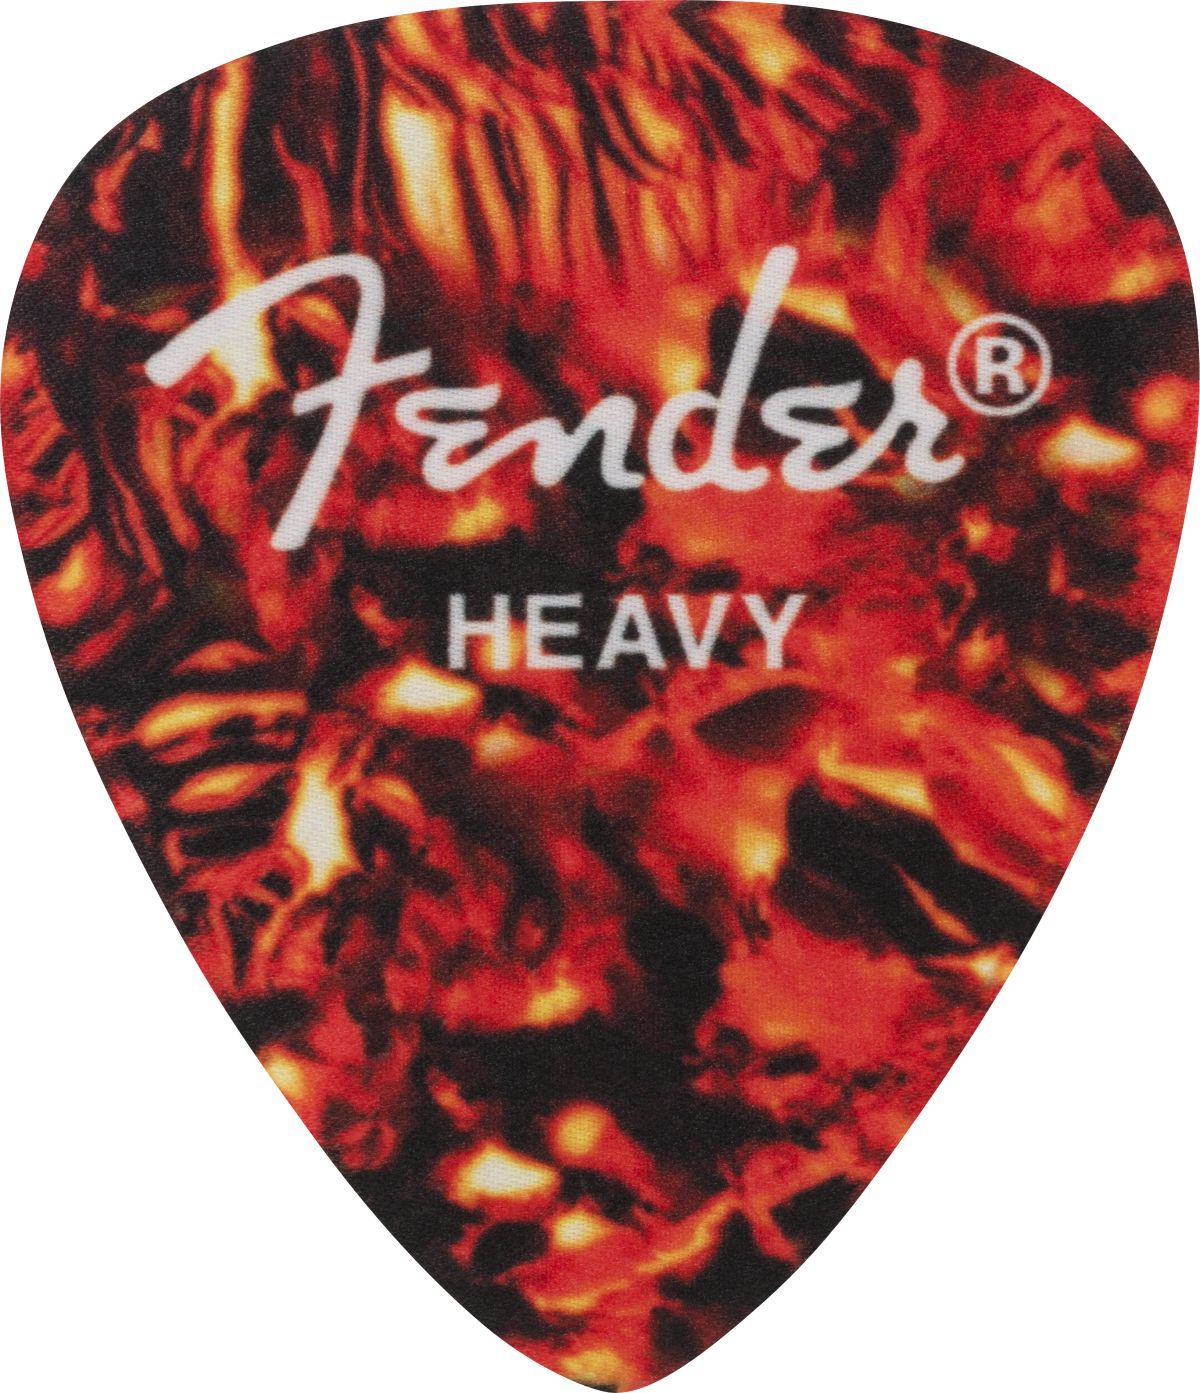 Fender Heavy Pick Patch Tortoiseshell